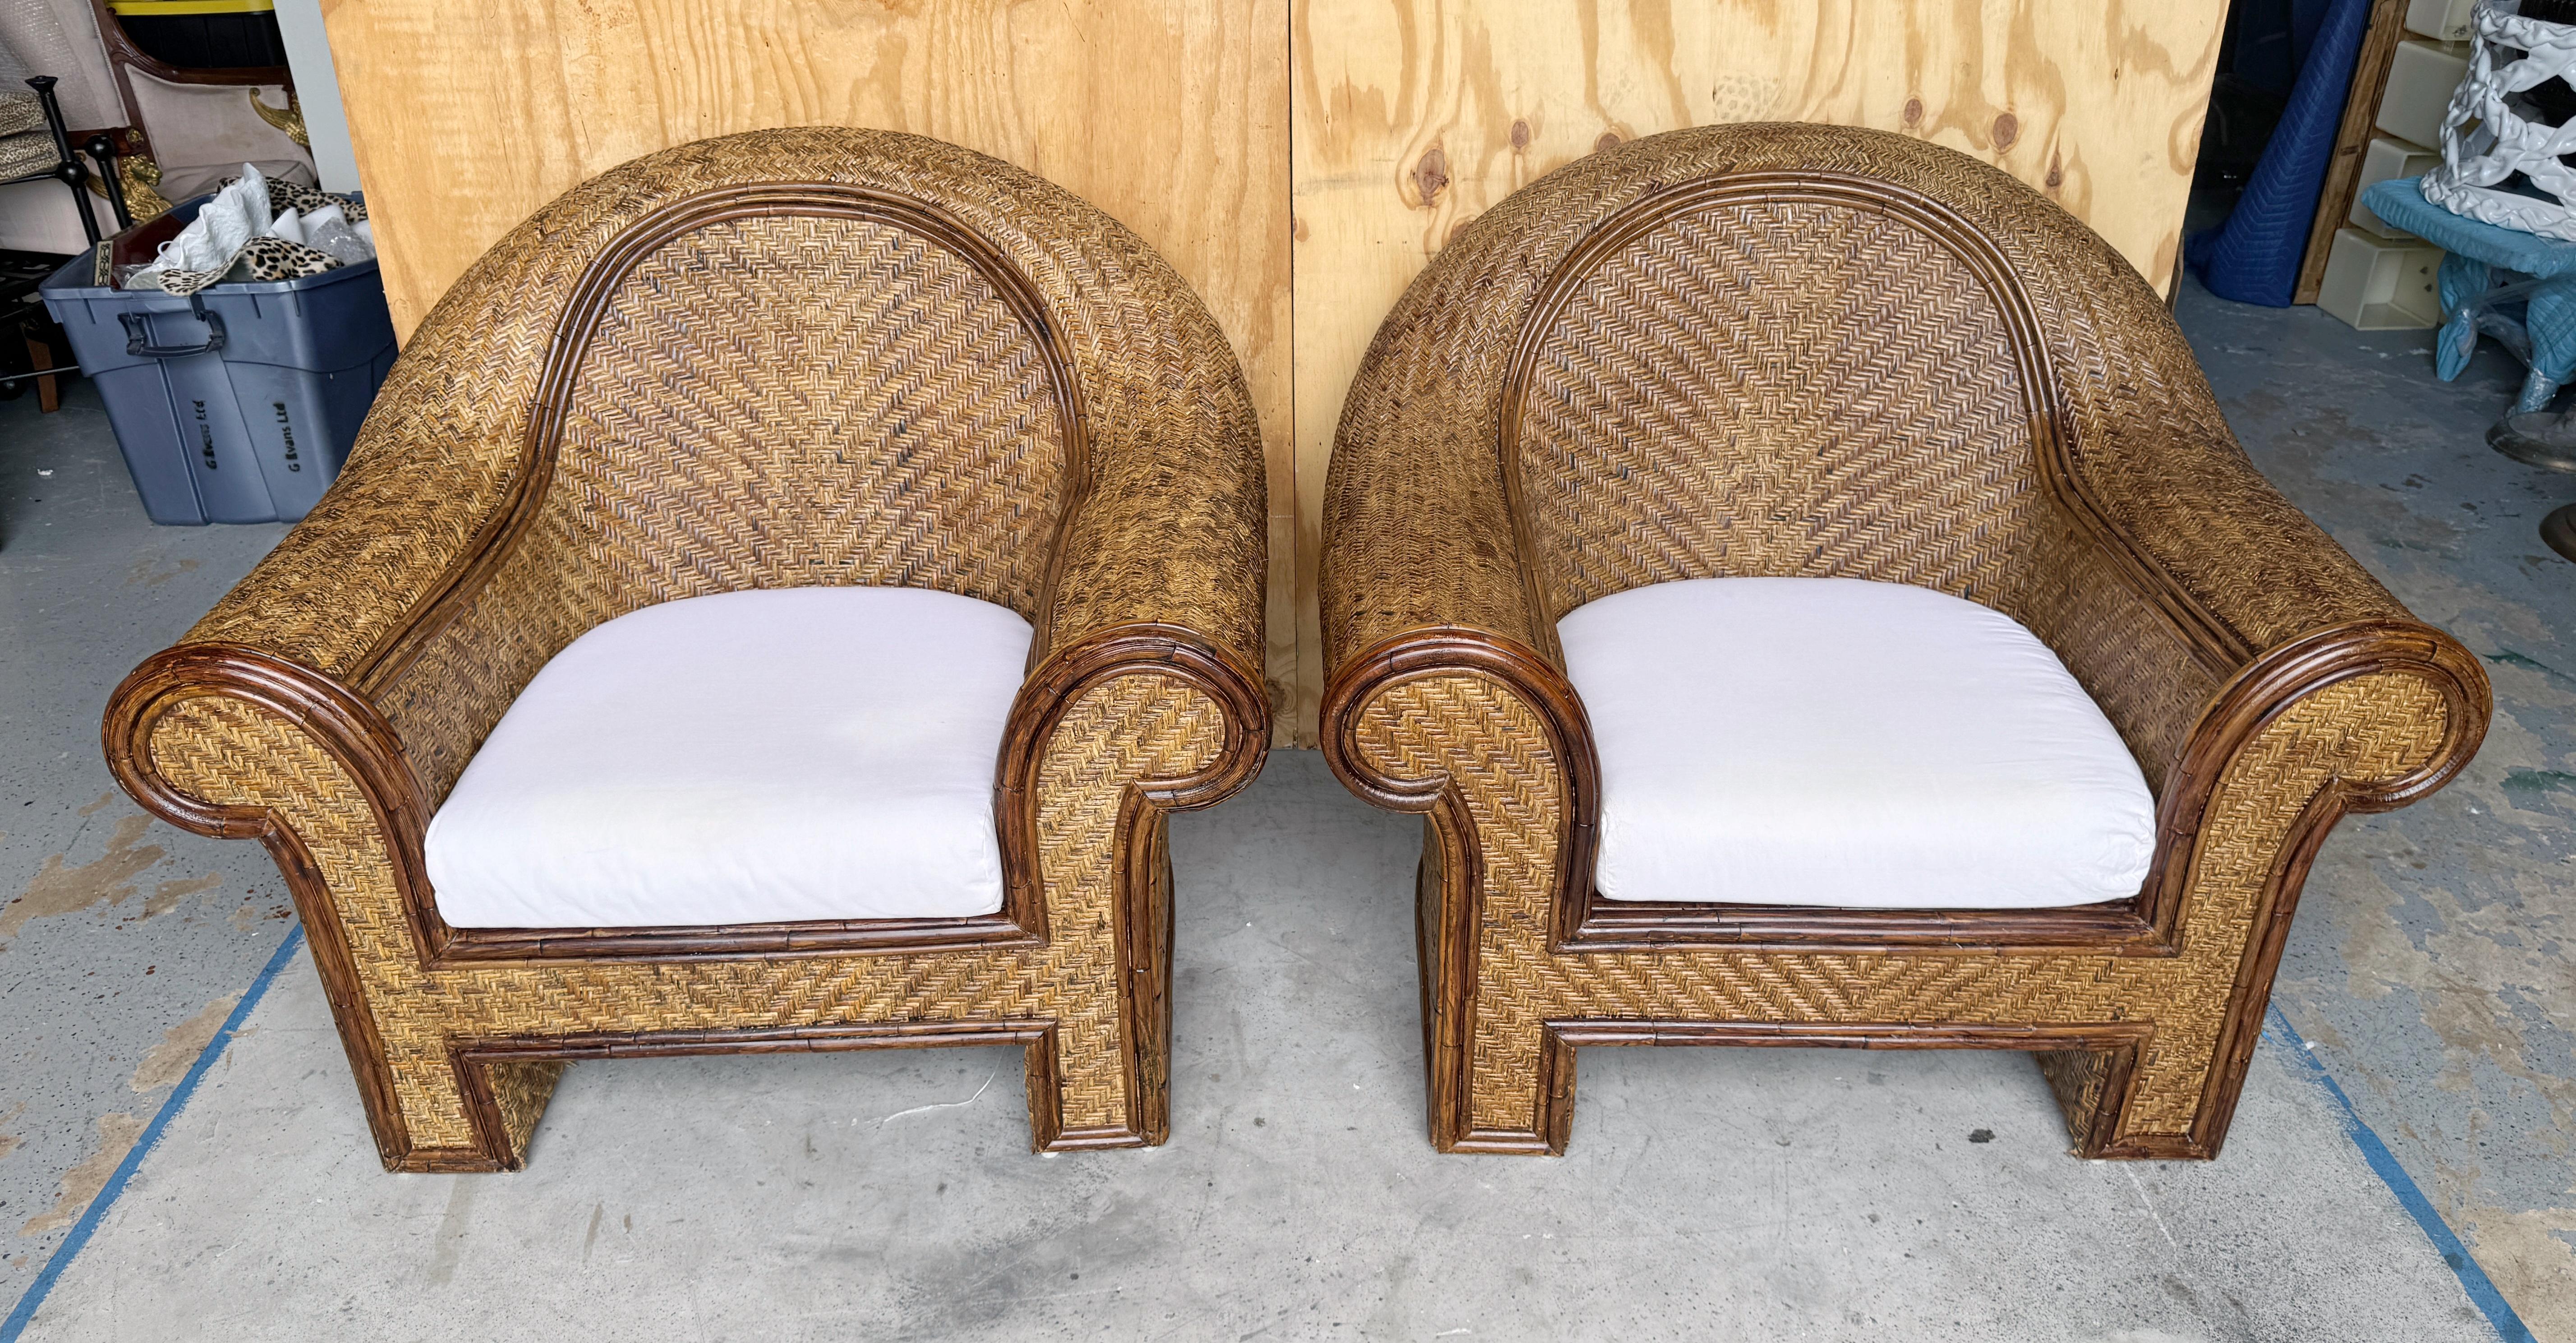 Ein Paar gewebte Clubsessel aus Coastal-Rattan und Schilf, Ralph Lauren zugeschrieben 

Wir freuen uns, Ihnen dieses Paar von  Coastal Rattan & Reed Woven Club Chairs, die dem berühmten Designer Ralph Lauren zugeschrieben werden. Diese  Die schönen